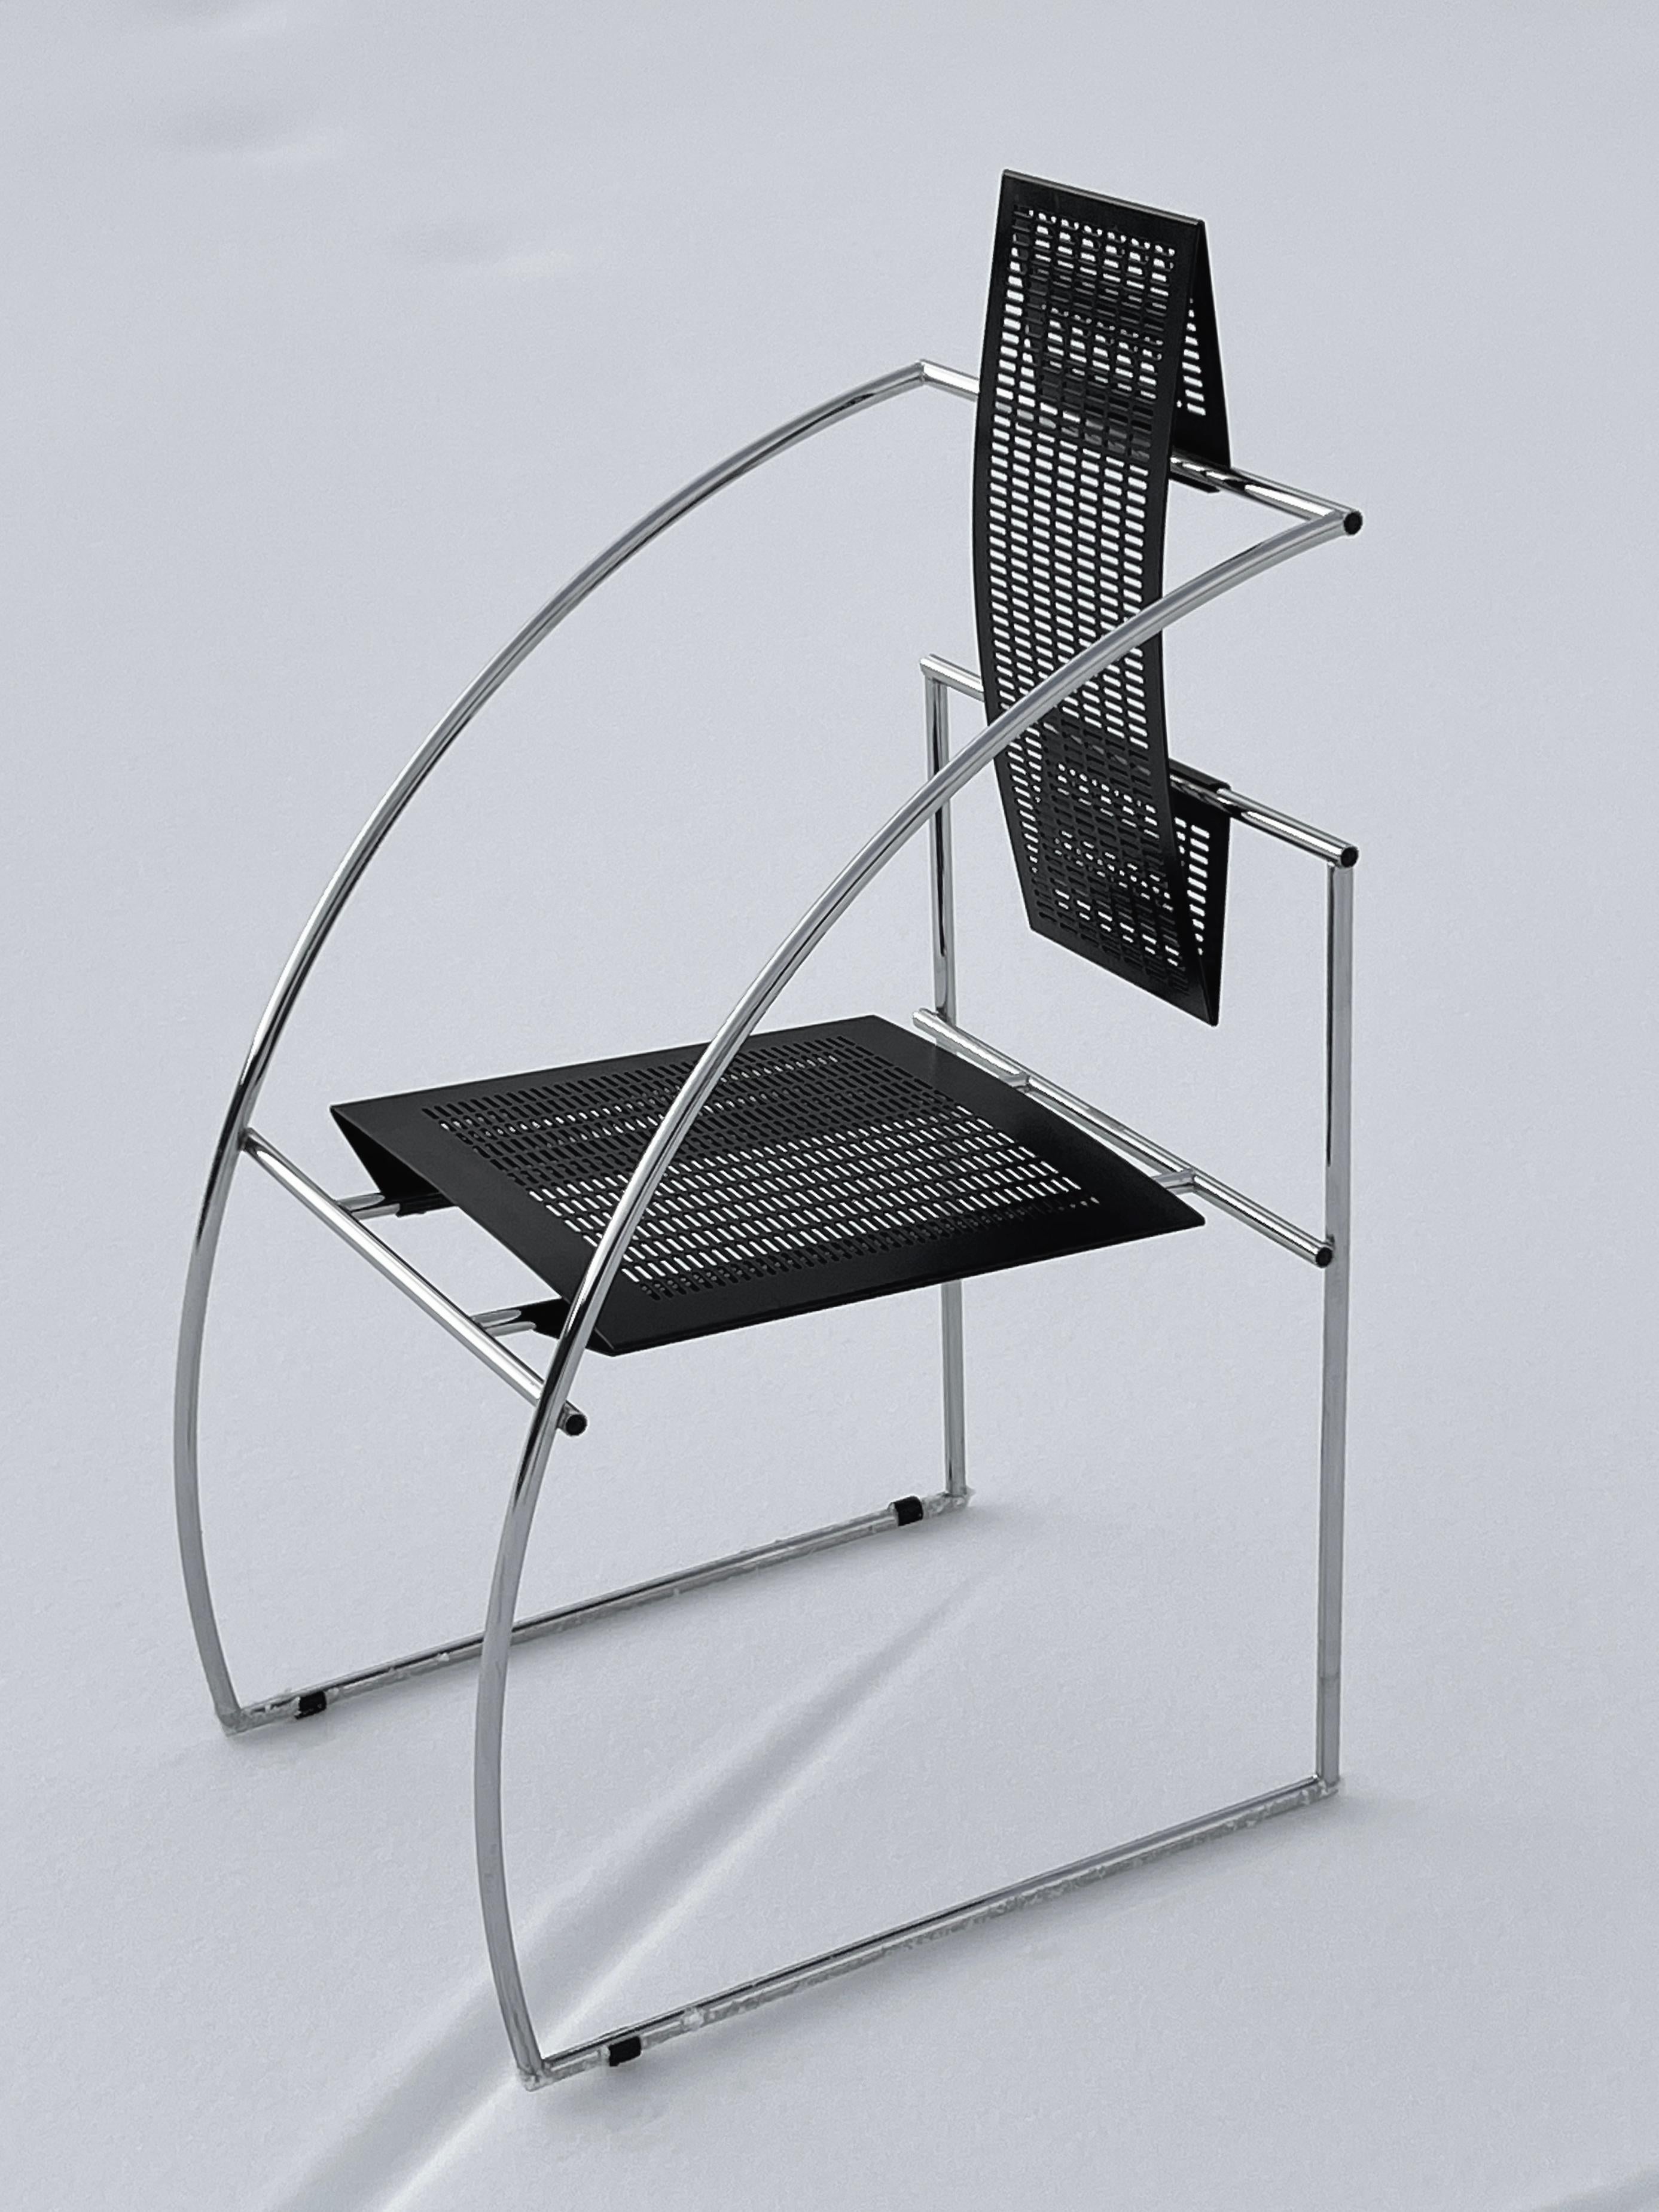 Quinta, ein Stuhl, dessen Geschichte bis zu seiner Kreation im Jahr 1985 zurückreicht, ist kein gewöhnlicher Sitz, sondern verkörpert eine Verschmelzung von Komfort und architektonischer Raffinesse. Dieses ikonische Möbelstück, das unter dem